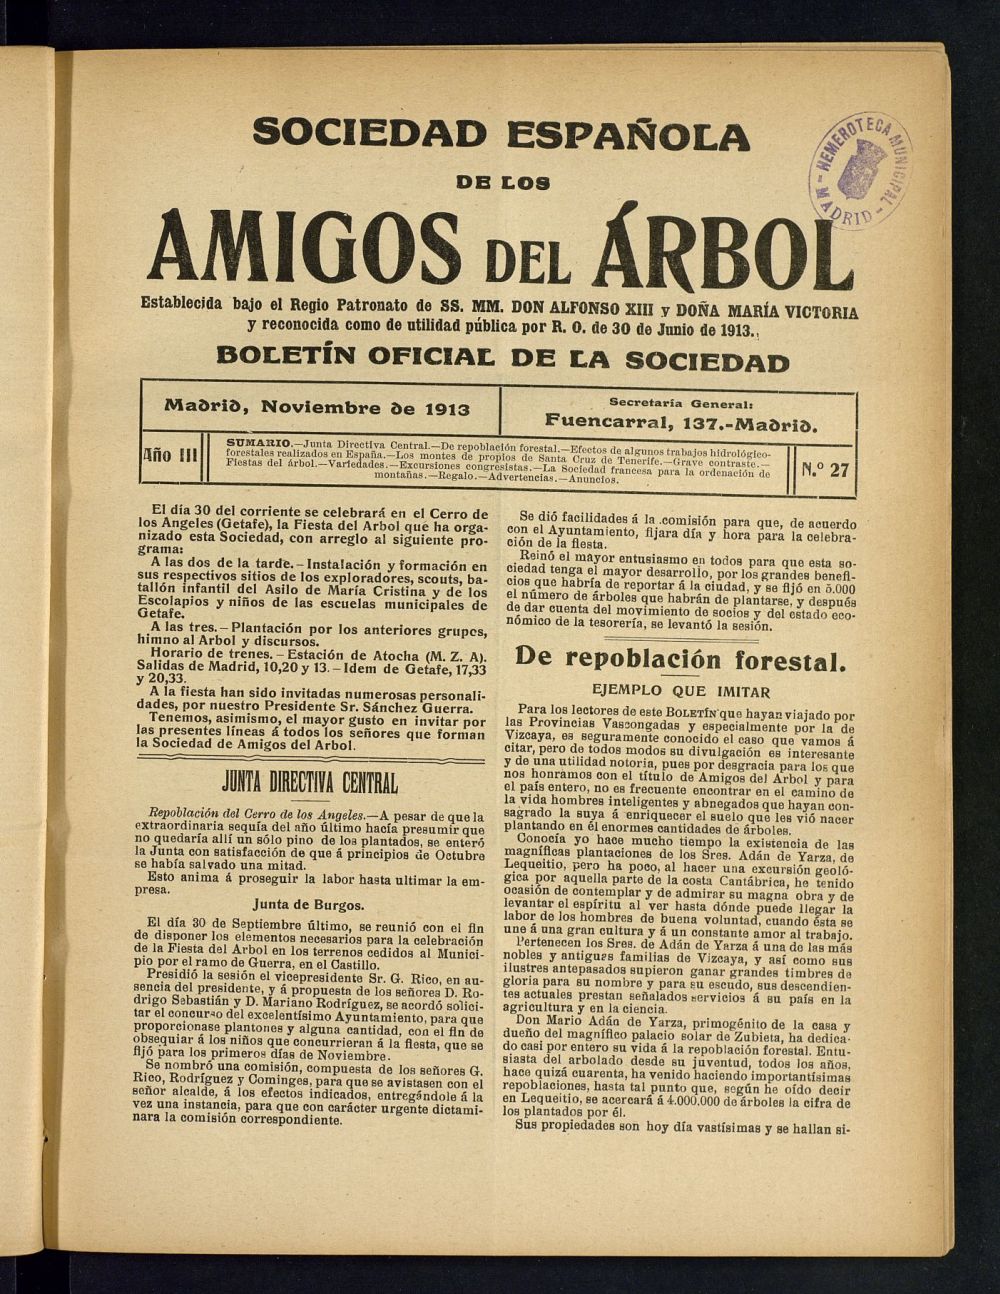 Boletn Comisin organizadora de la Sociedad Espaola de los amigos del rbol de noviembre de 1913